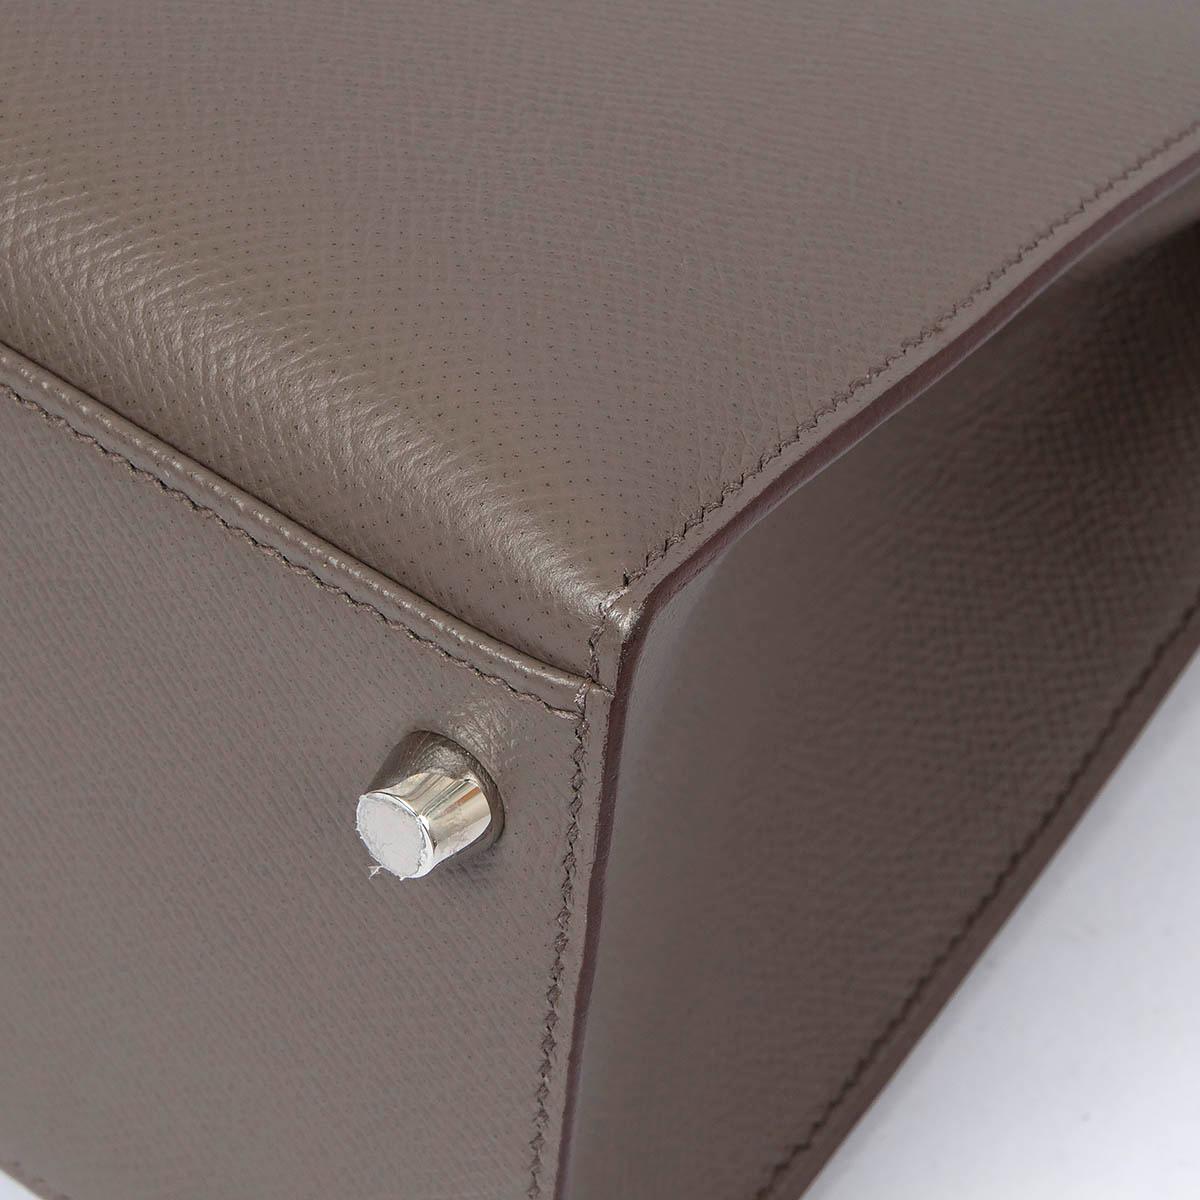 HERMES Etain grey Epsom leather KELLY 28 SELLIER Bag Phw 7